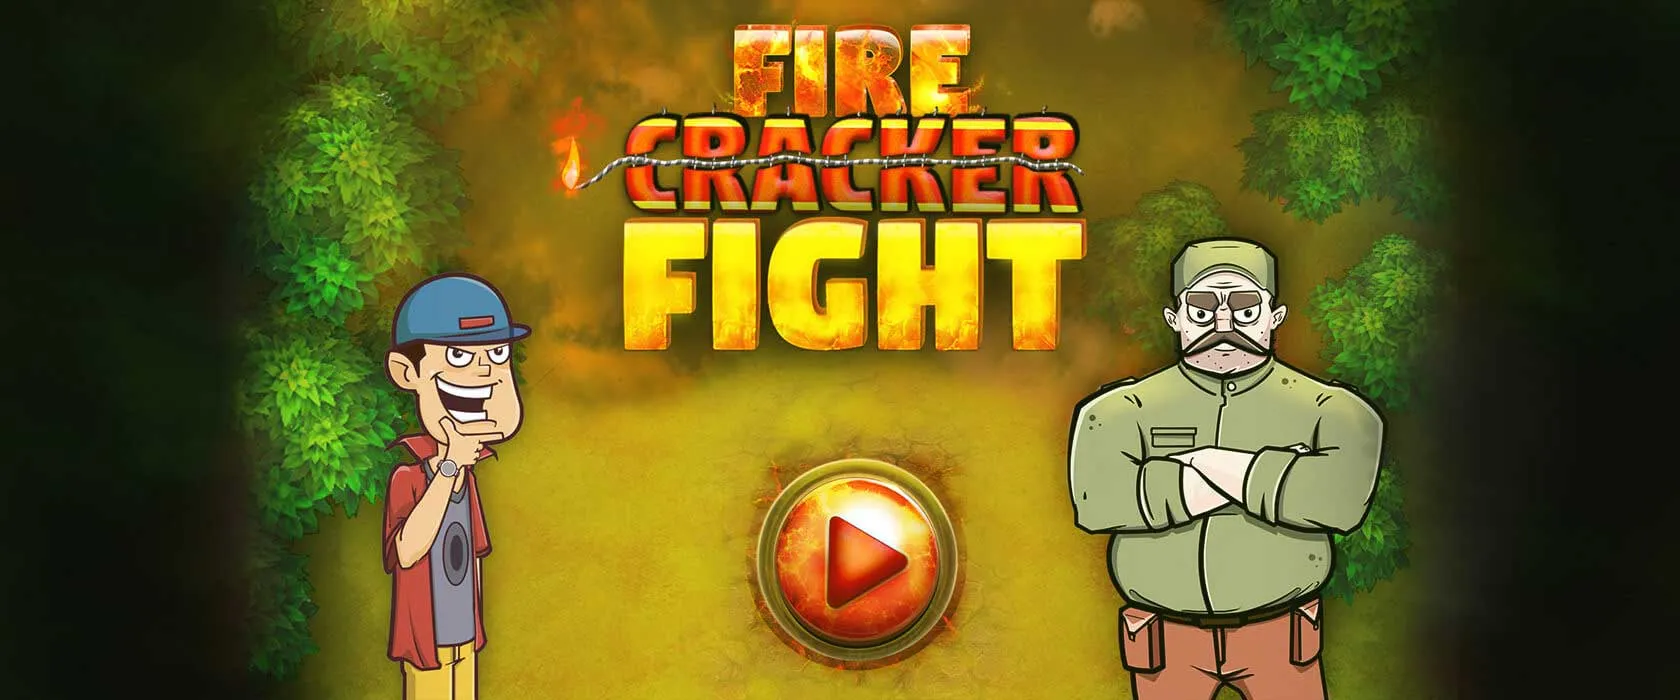 Fire cracker fight client portfolio thumbnail